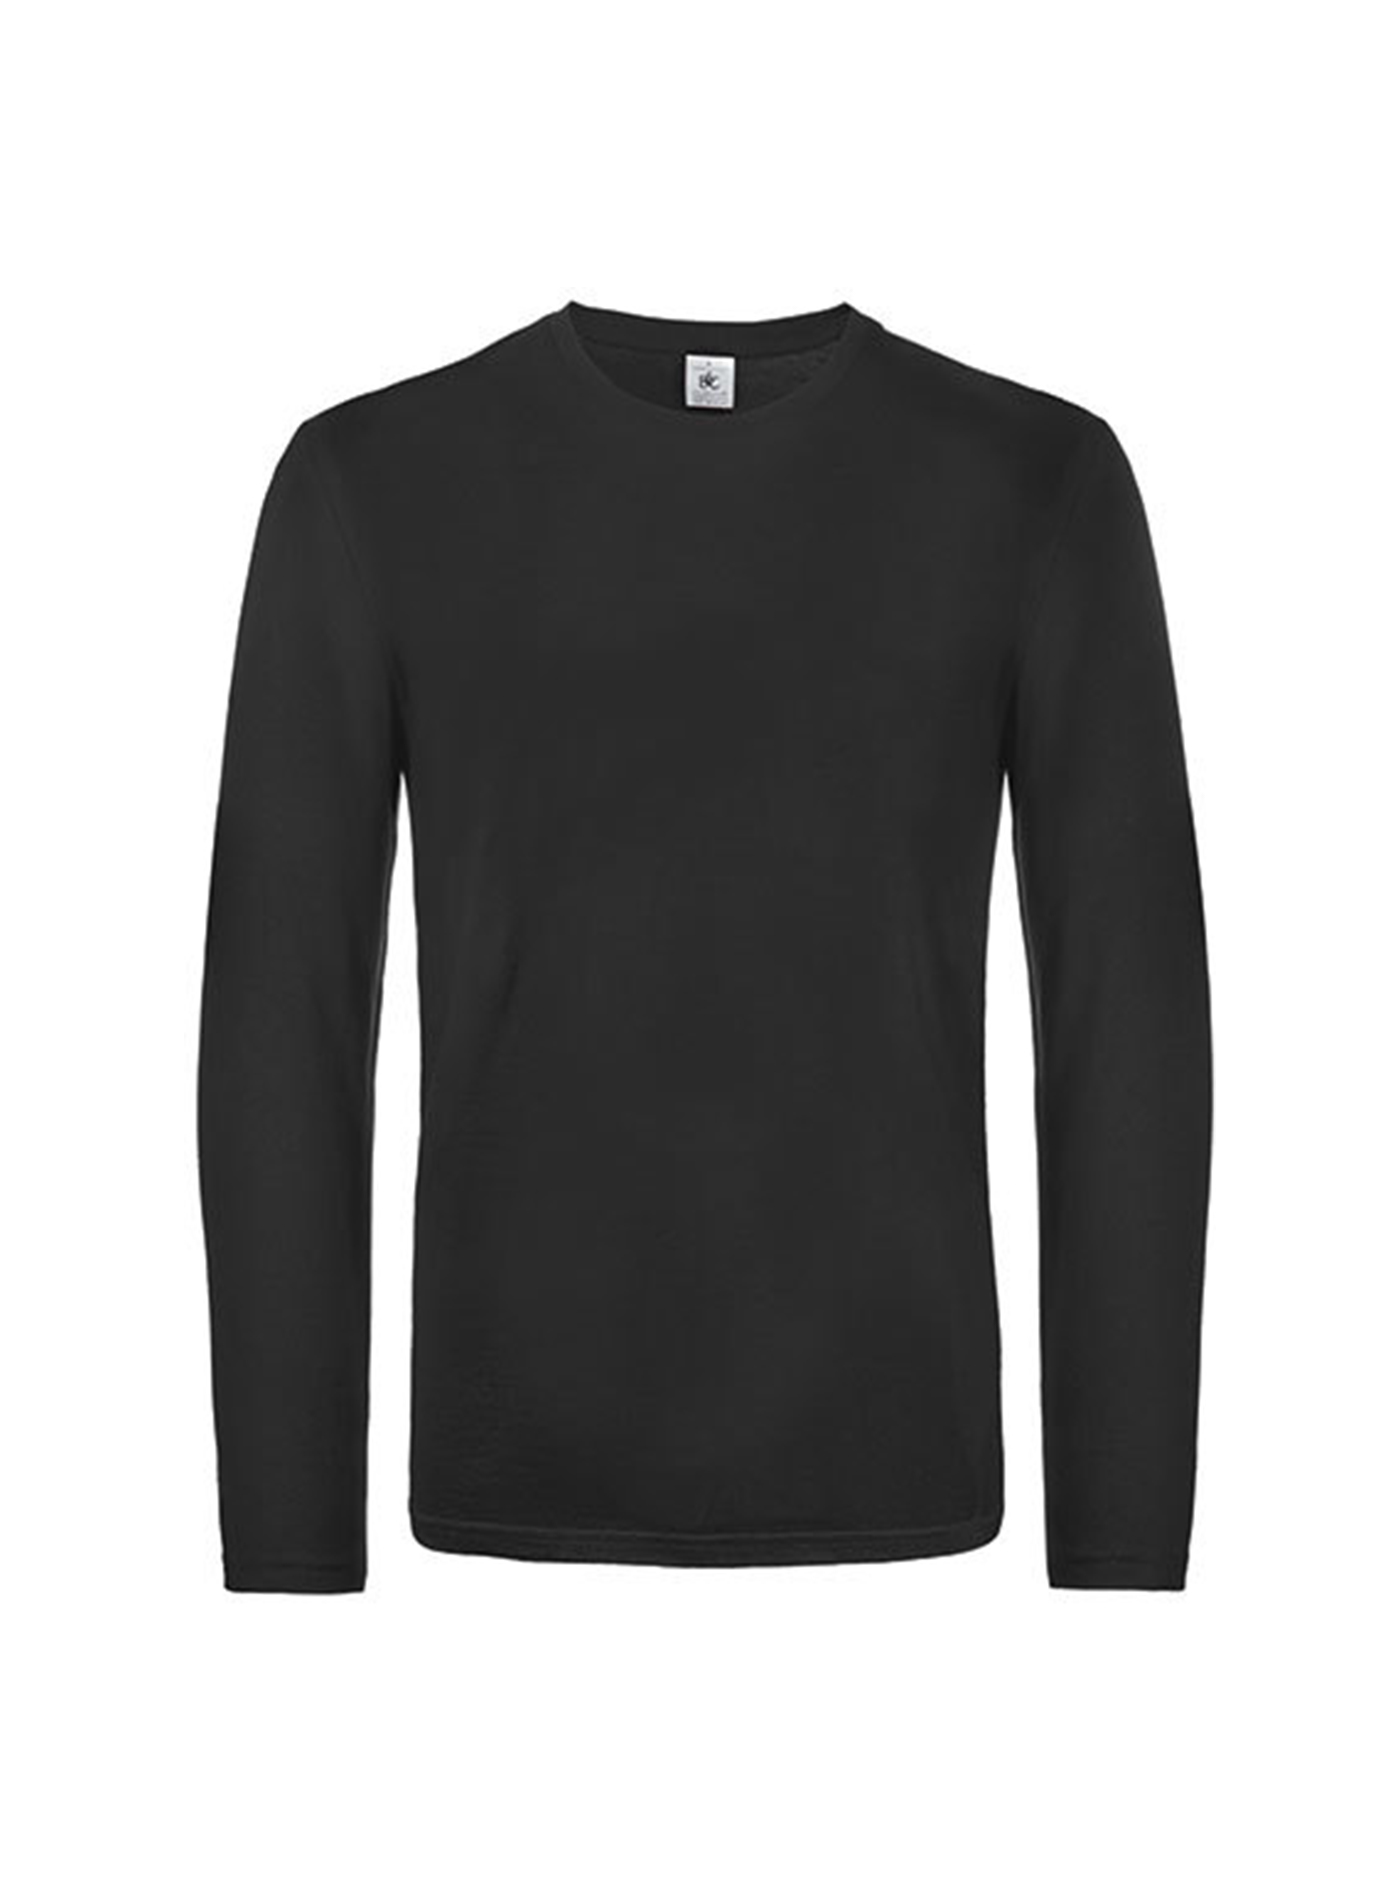 Pánské tričko s dlouhým rukávem B&C Collection - Černá L